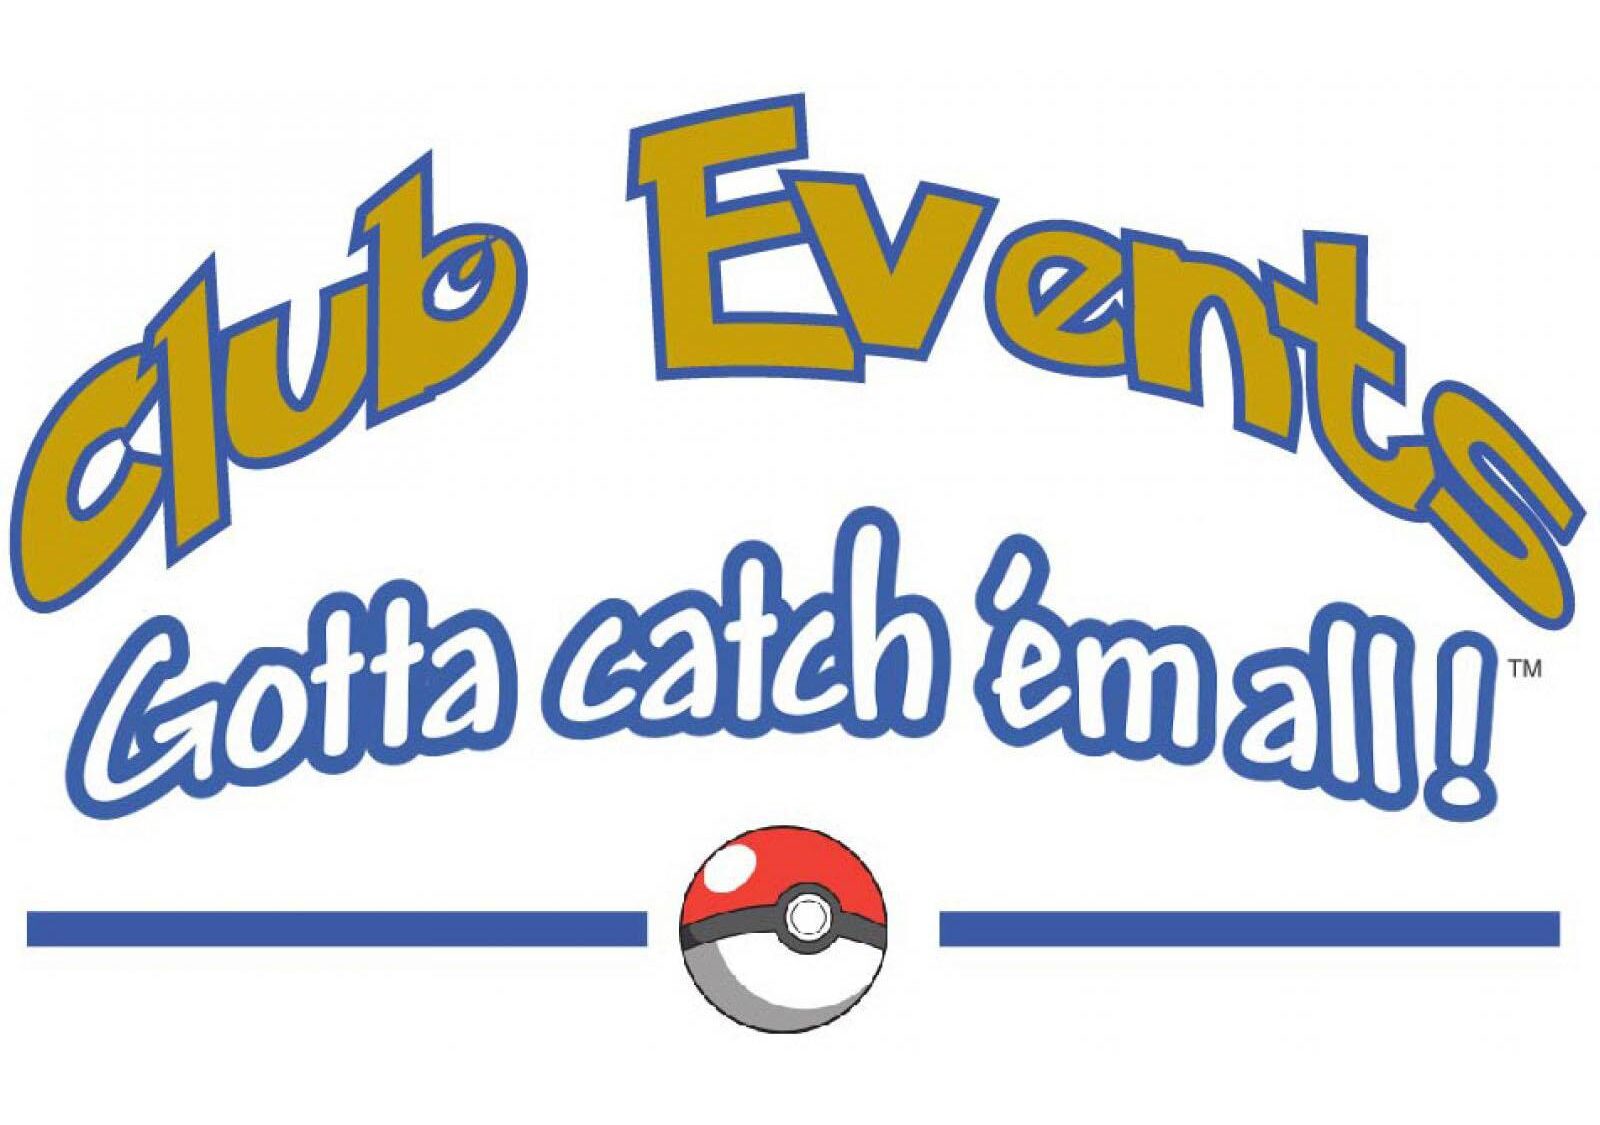 Club Events: Gotta catch 'em all!